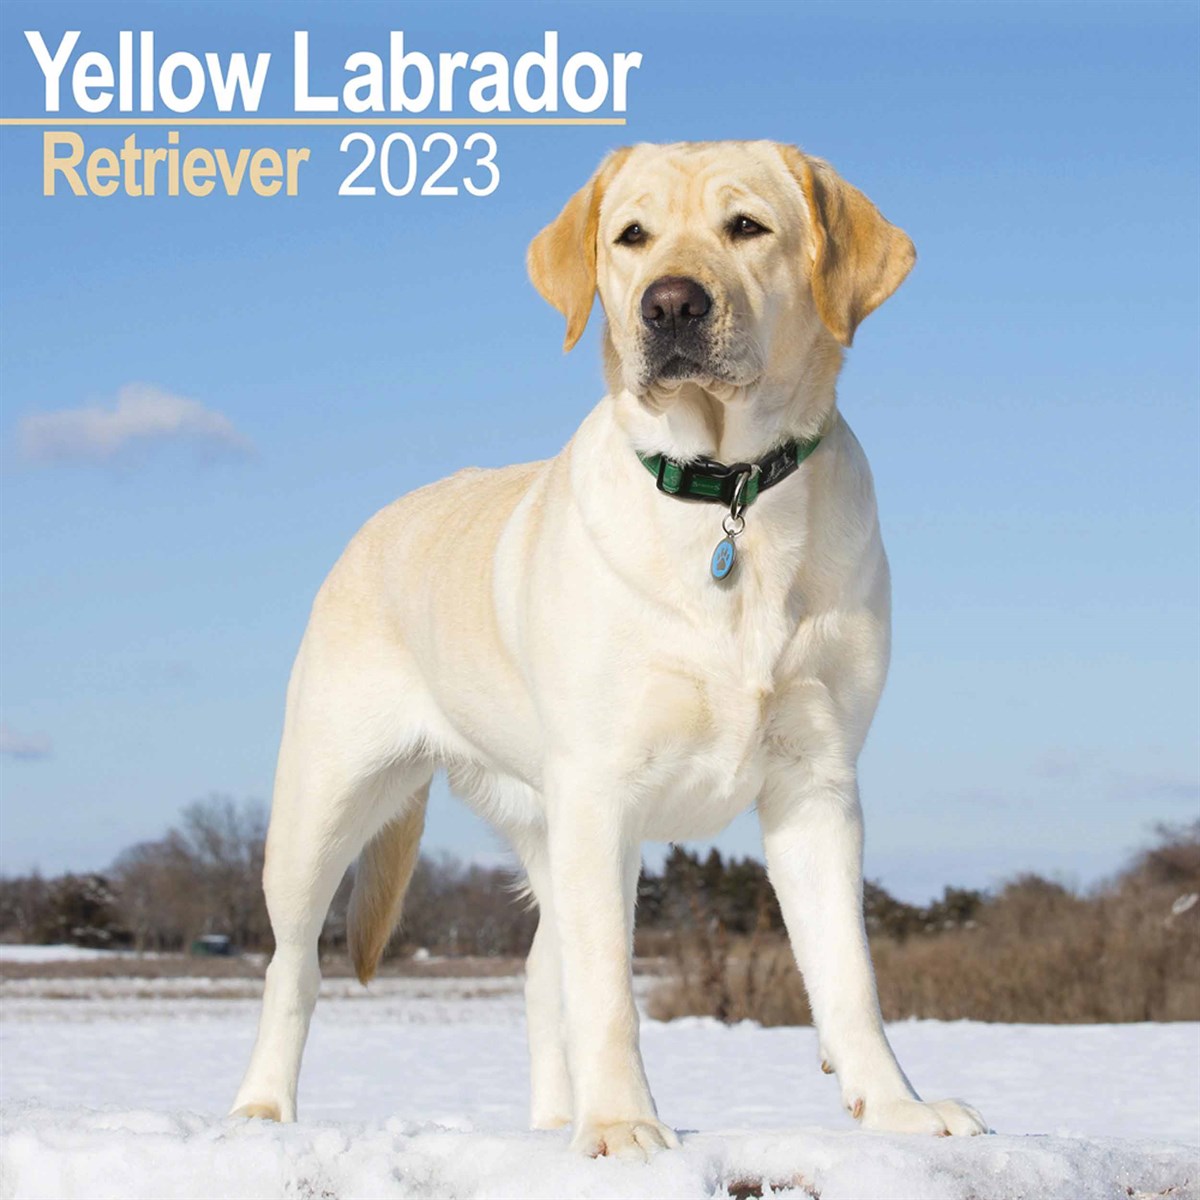 Yellow Labrador Retriever 2023 Calendars